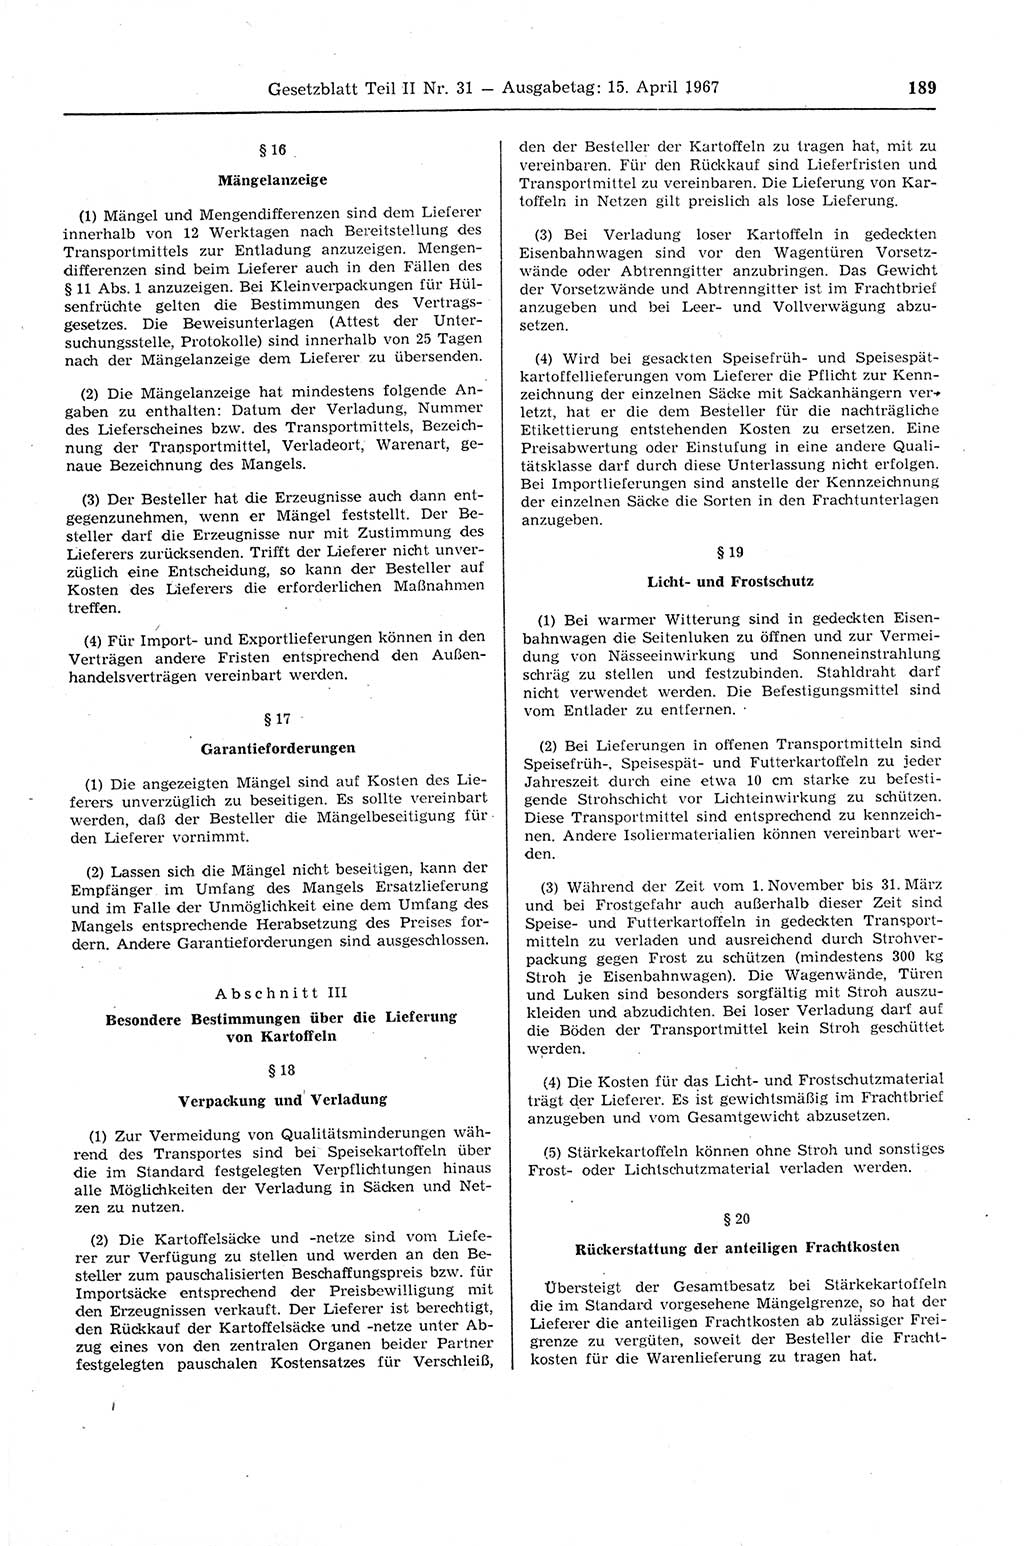 Gesetzblatt (GBl.) der Deutschen Demokratischen Republik (DDR) Teil ⅠⅠ 1967, Seite 189 (GBl. DDR ⅠⅠ 1967, S. 189)